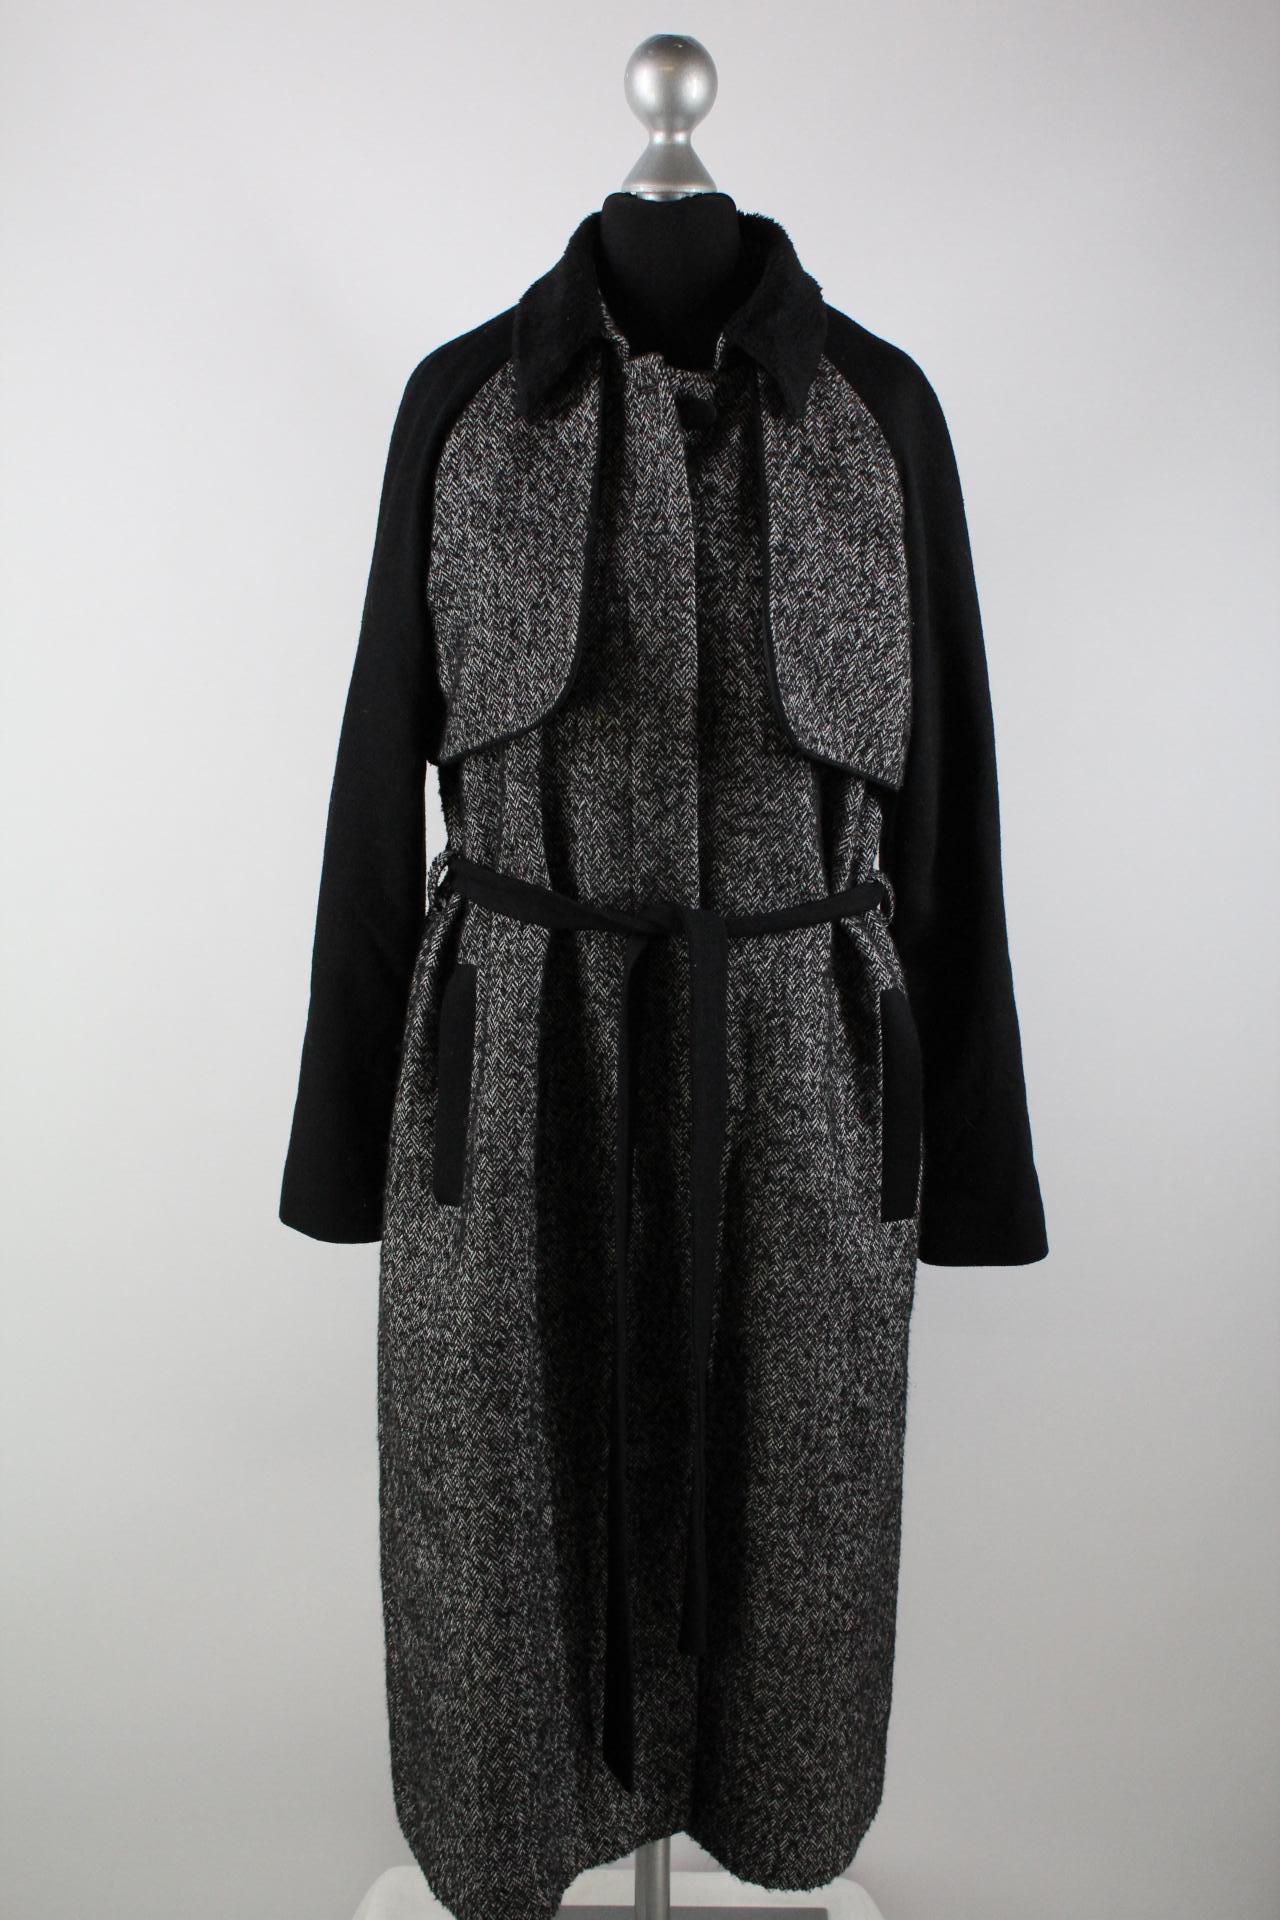 Tugba Damen-Mantel schwarz/weiß Größe 38